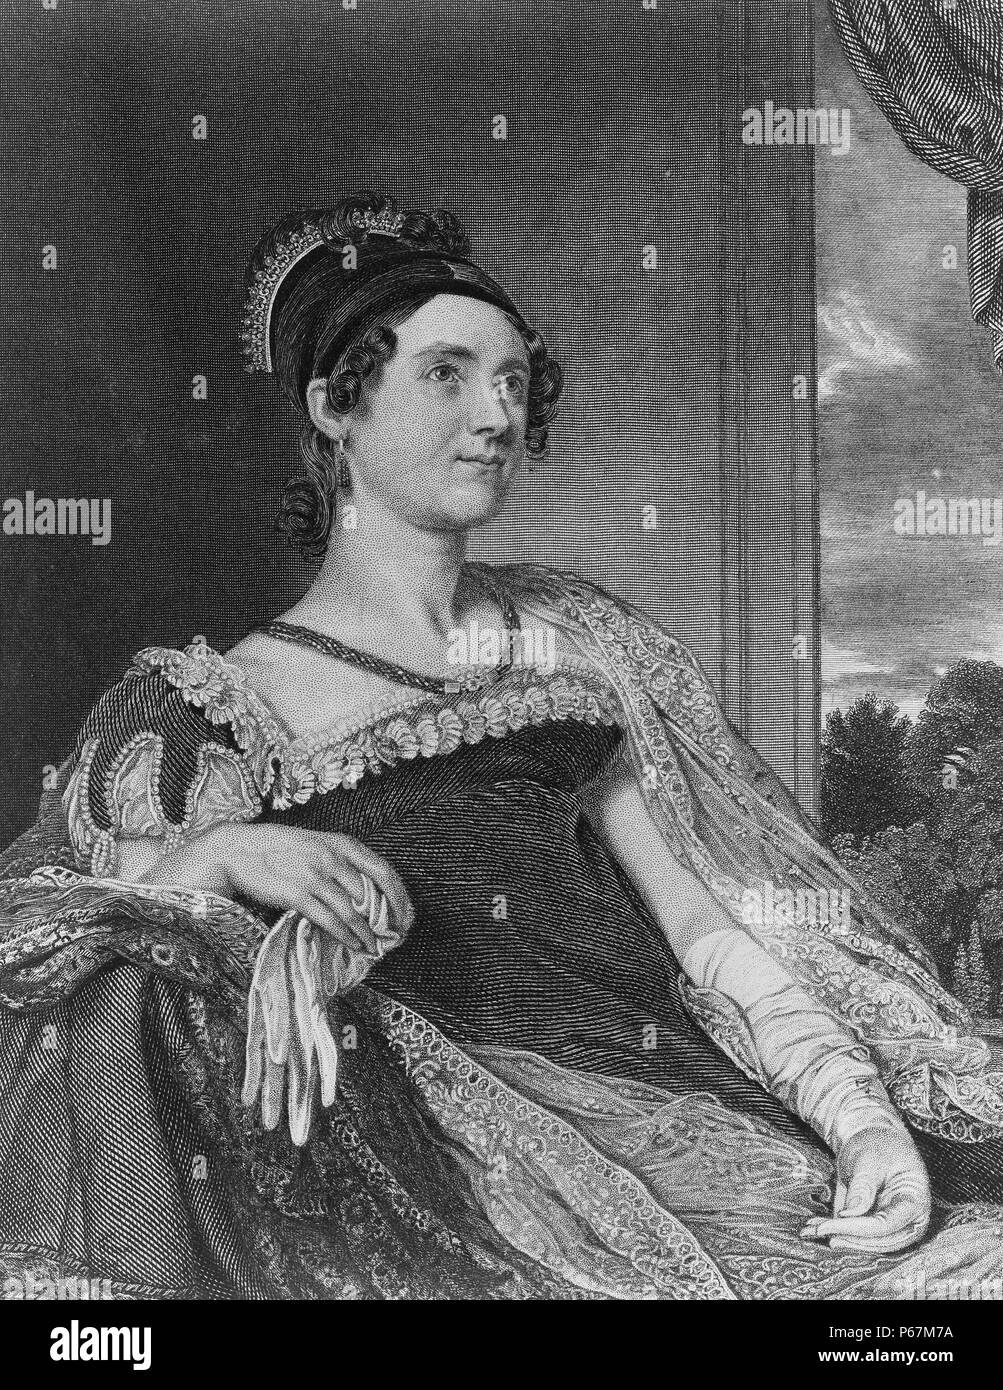 Frau John Quincy Adams - Louisa Catherine Adams (1775-1852). Sie ist die einzige Erste Dame außerhalb der Vereinigten Staaten geboren worden zu sein und traf John Quincy Adams in London, nachdem ihr Vater United States Generalkonsul ernannt worden war. Stockfoto